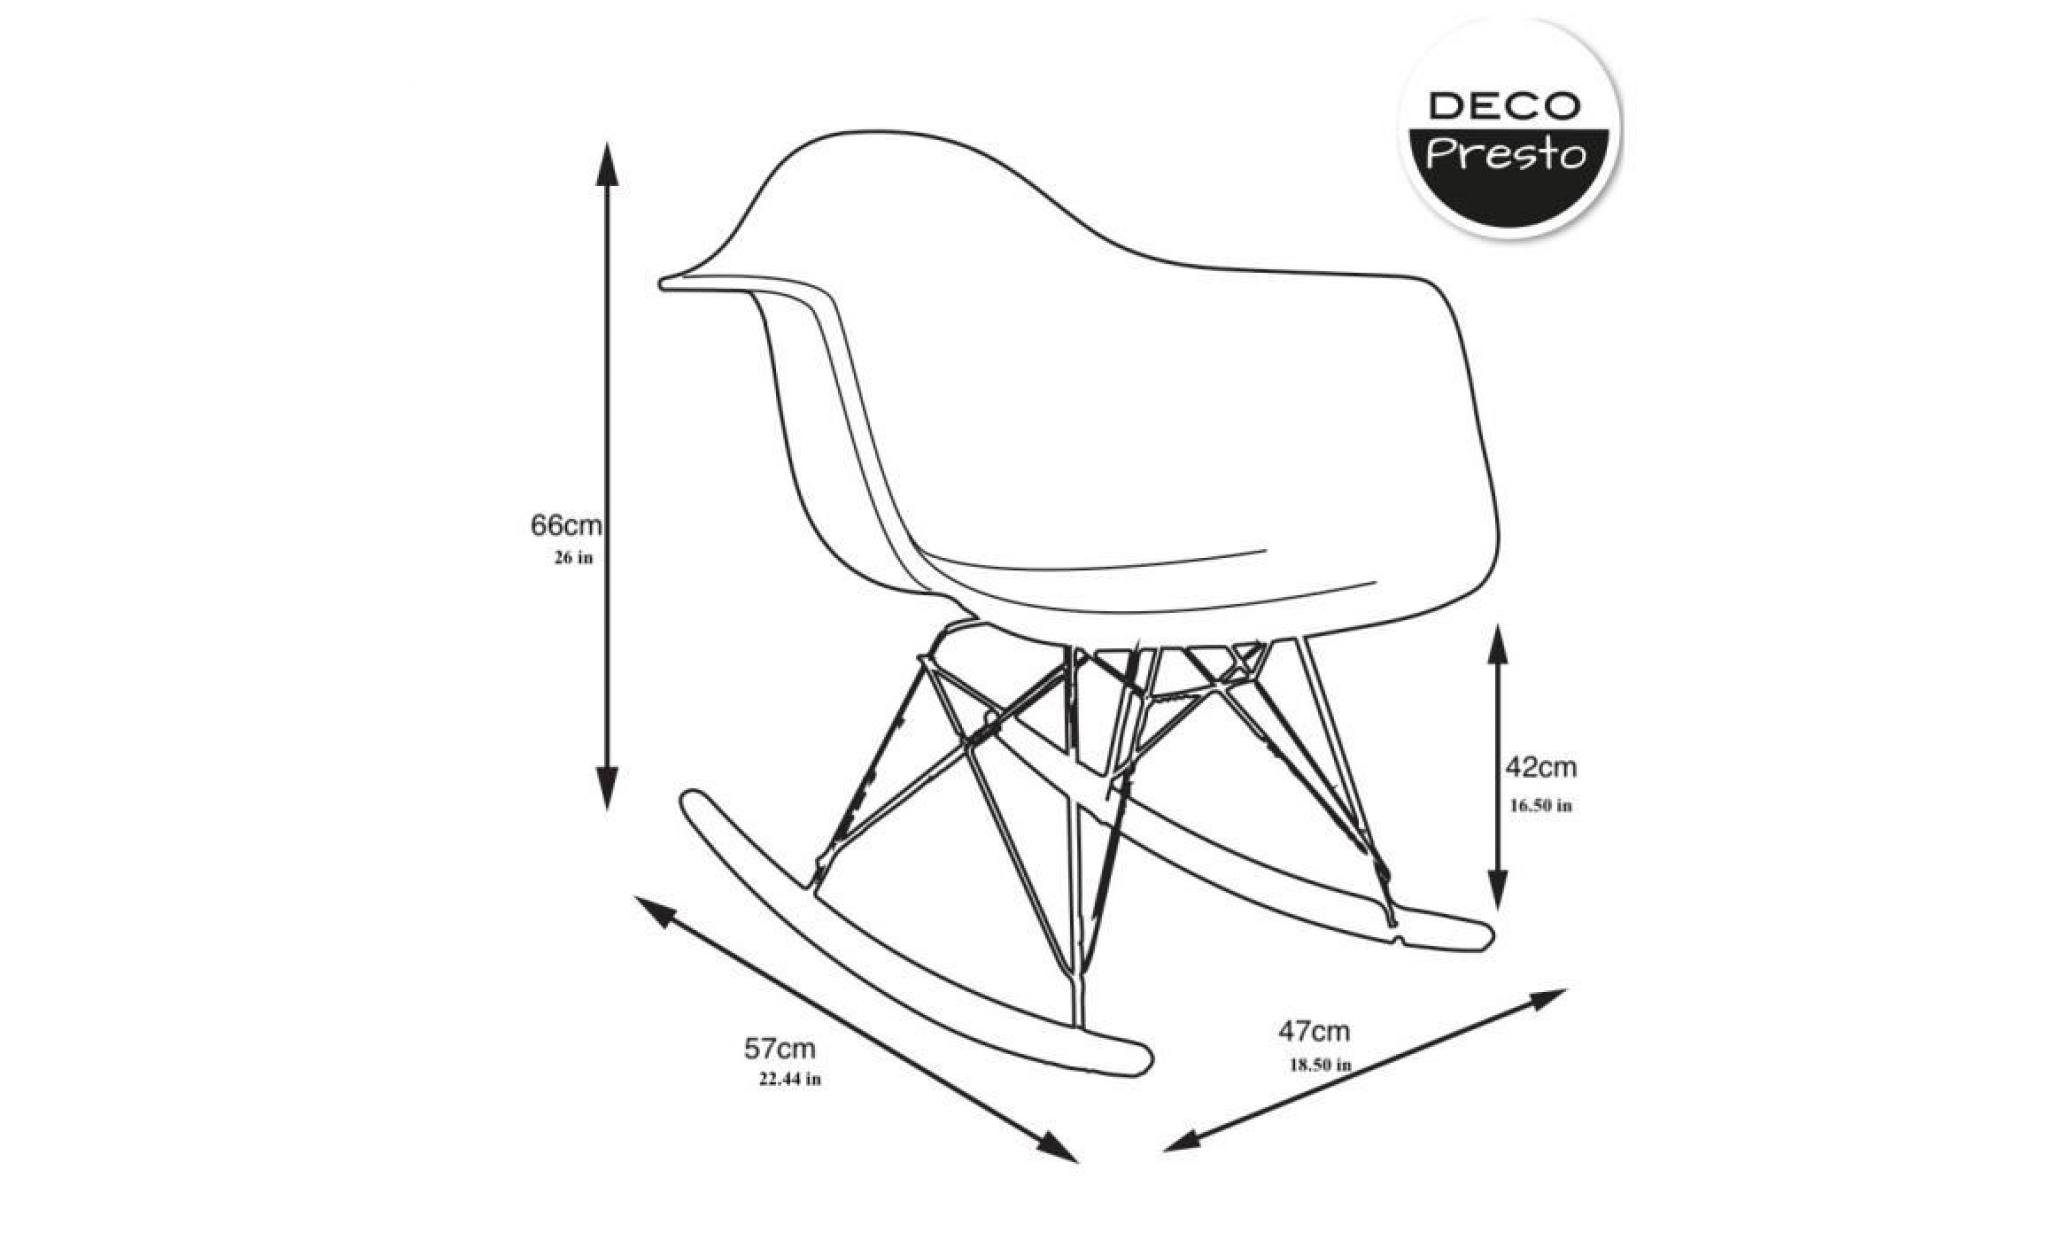 1 x fauteuil à bascule rocking chair eiffel  patchwork noir blanc pieds: bois noir decopresto dp rarb pn 1 pas cher